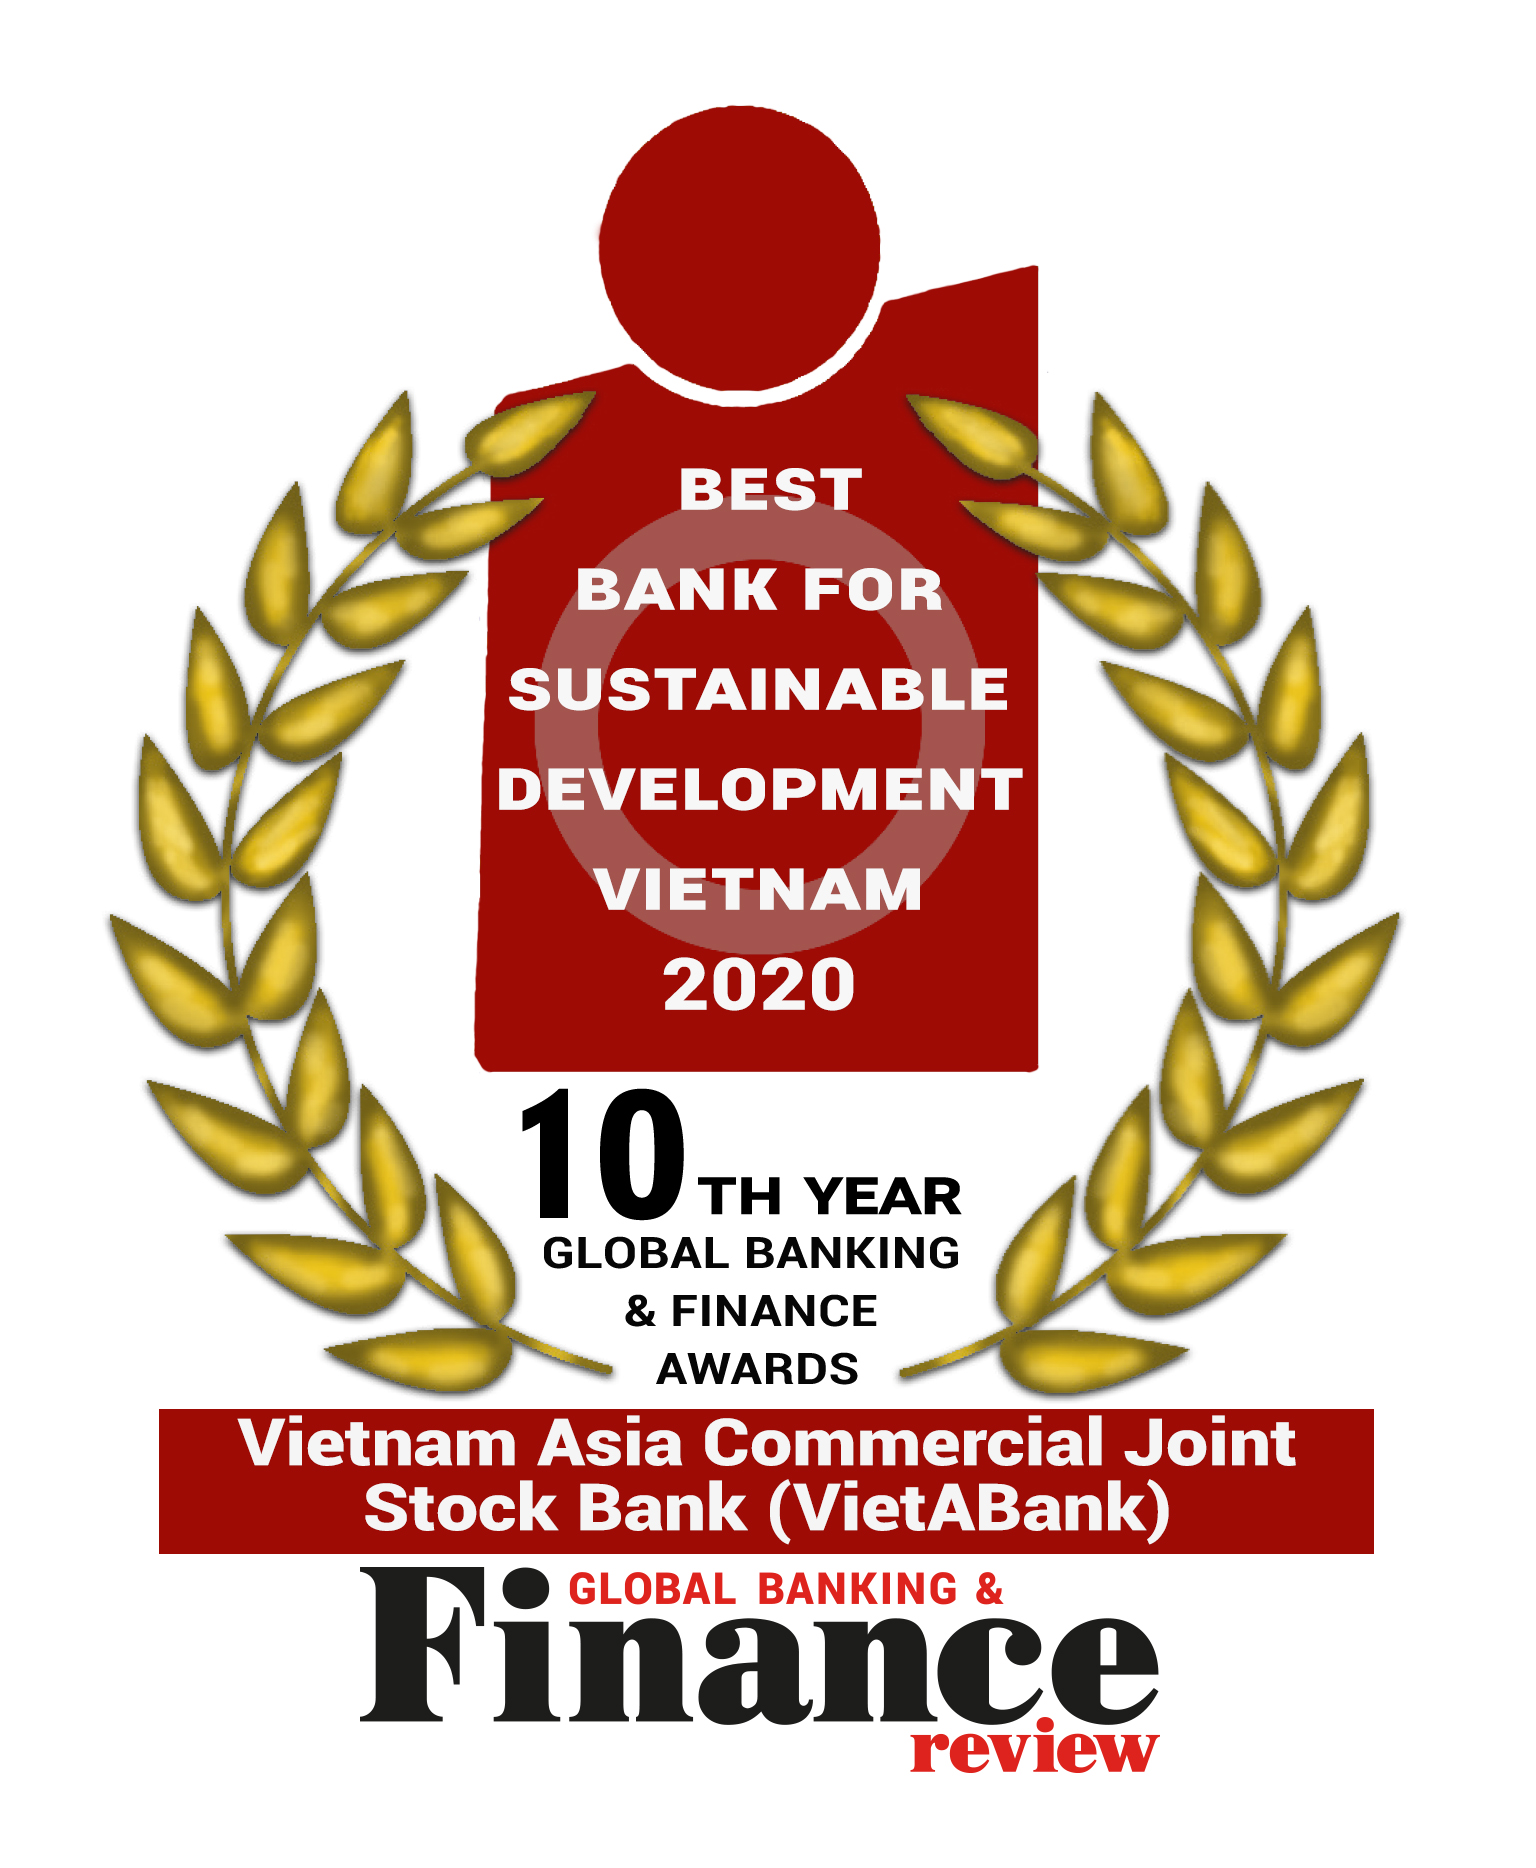 Best Bank for Sustainable Development Vietnam 2020 - Ngân hàng phát triển bền vững nhất Việt Nam 2020 